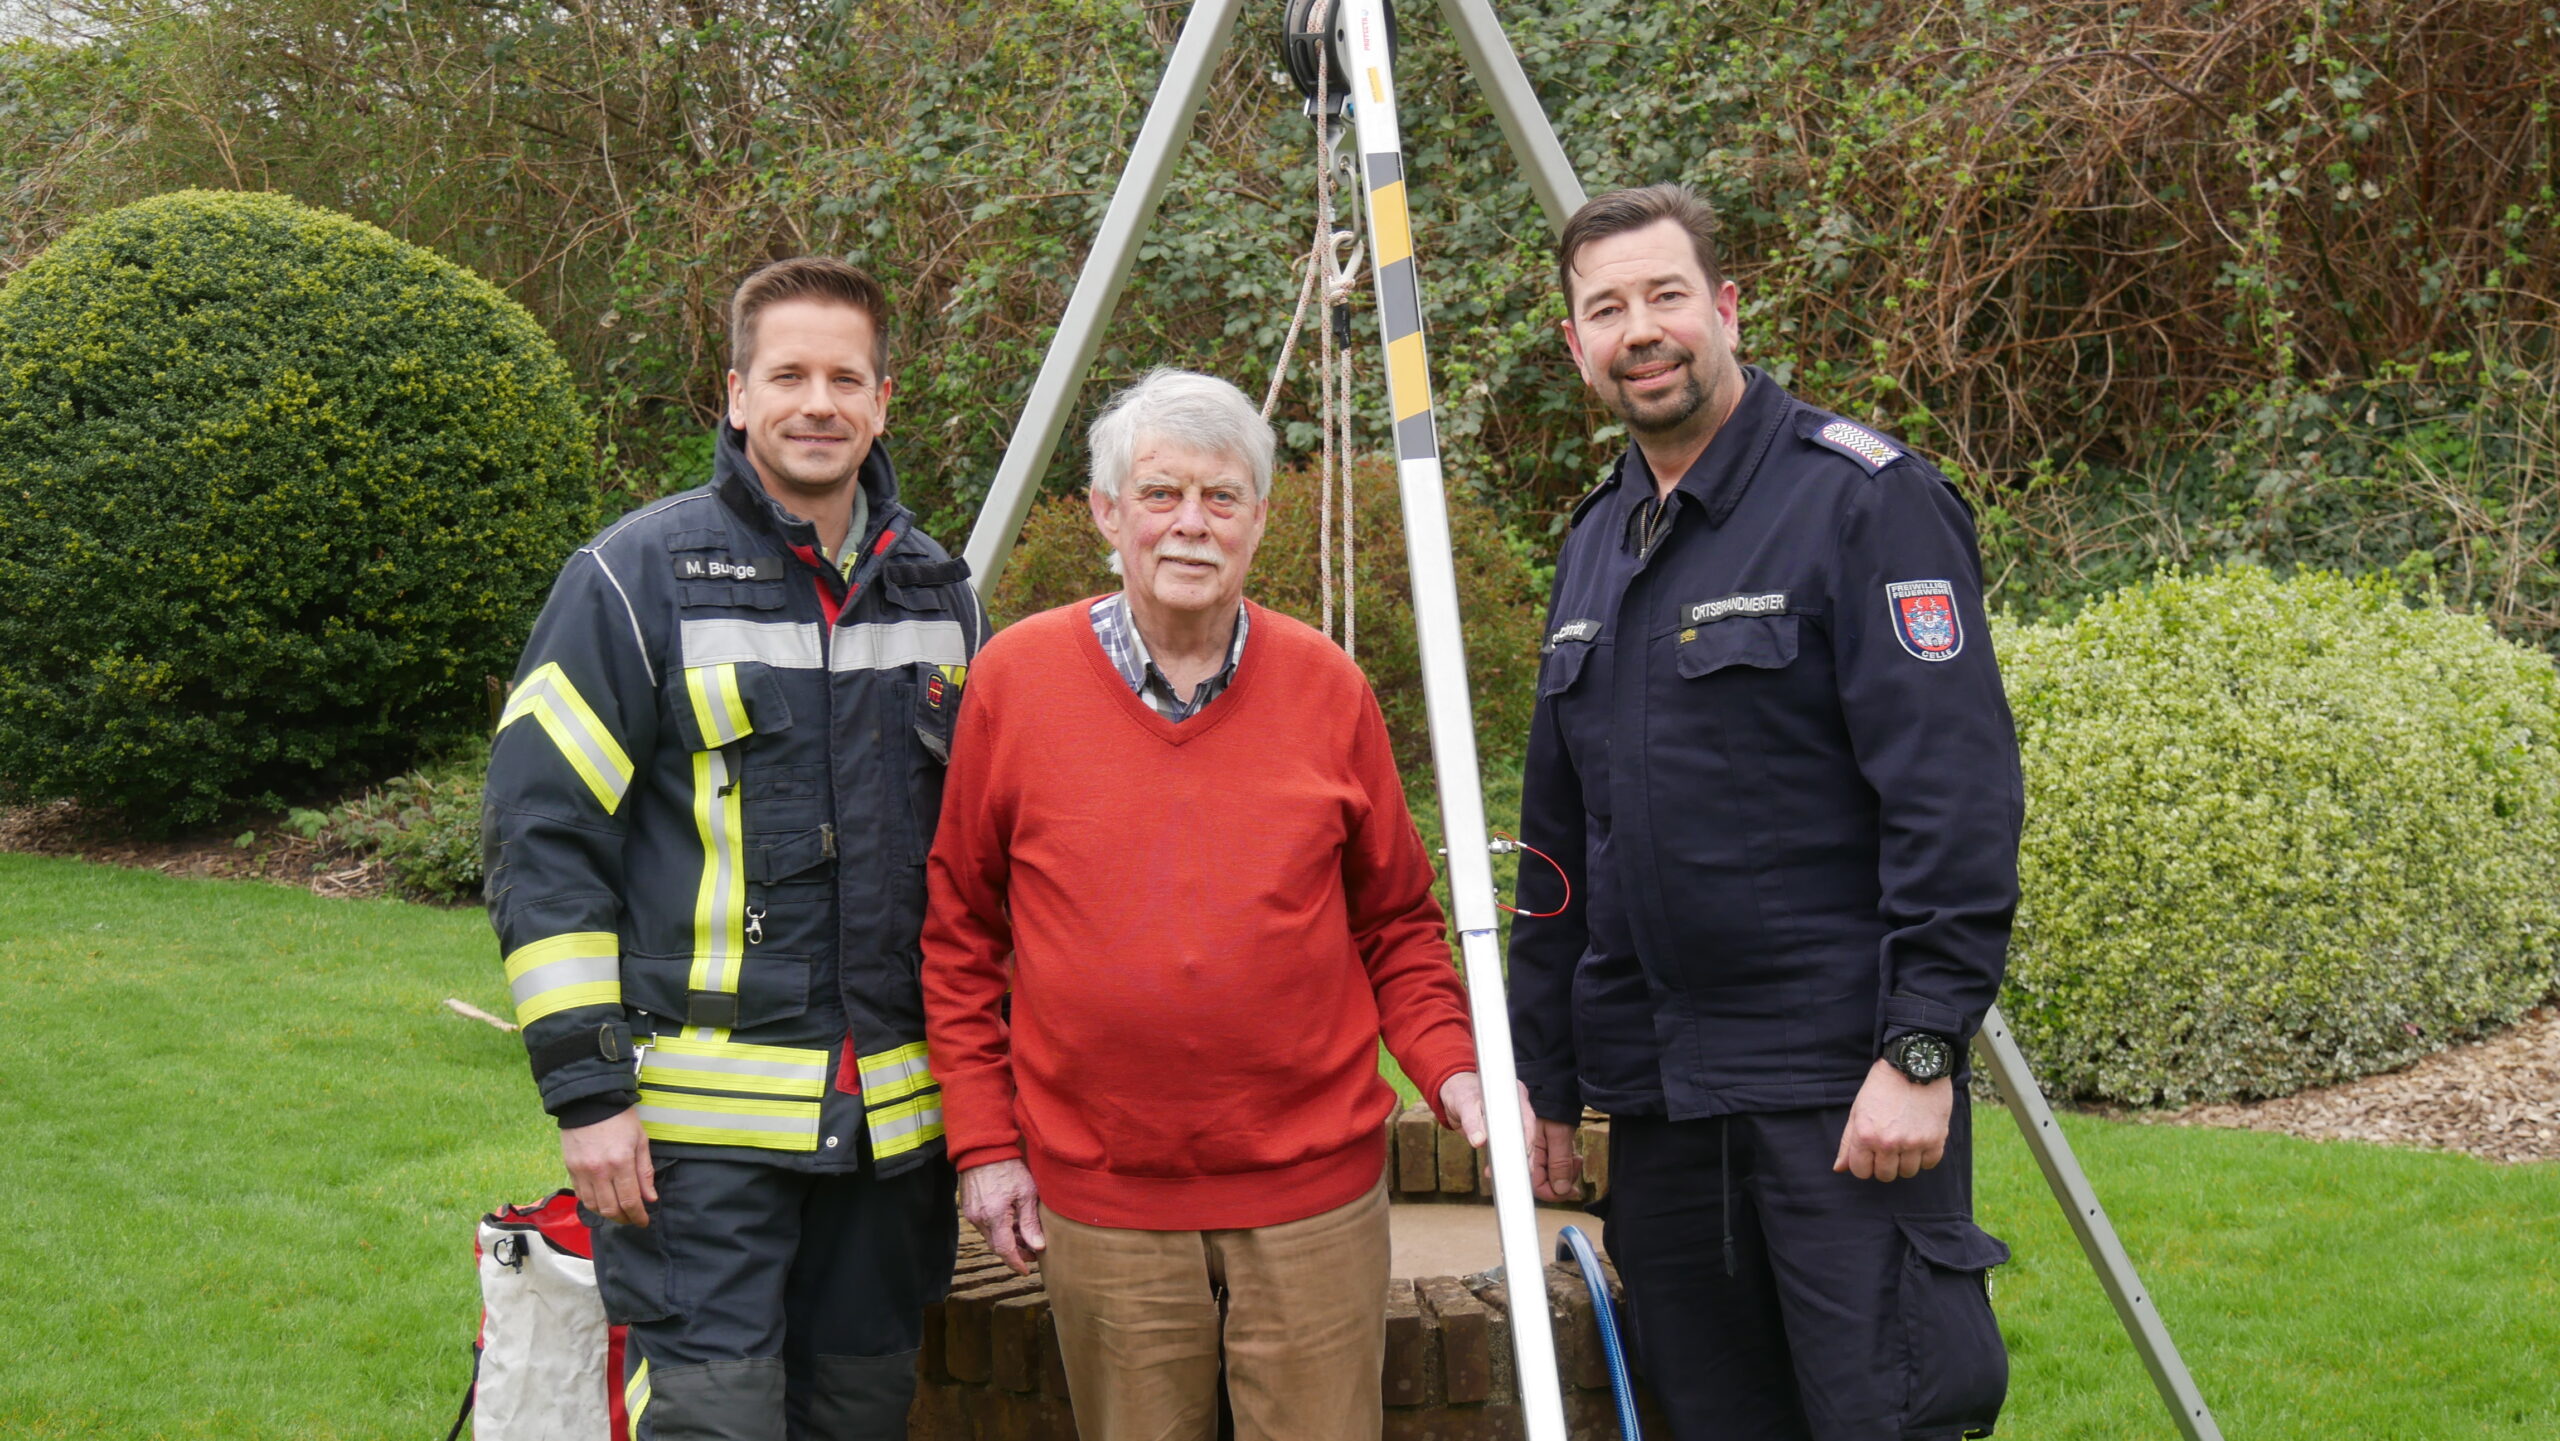 Celle Danke nach Rettung aus Brunnen - Feuerwehr rät zur Vorsicht!